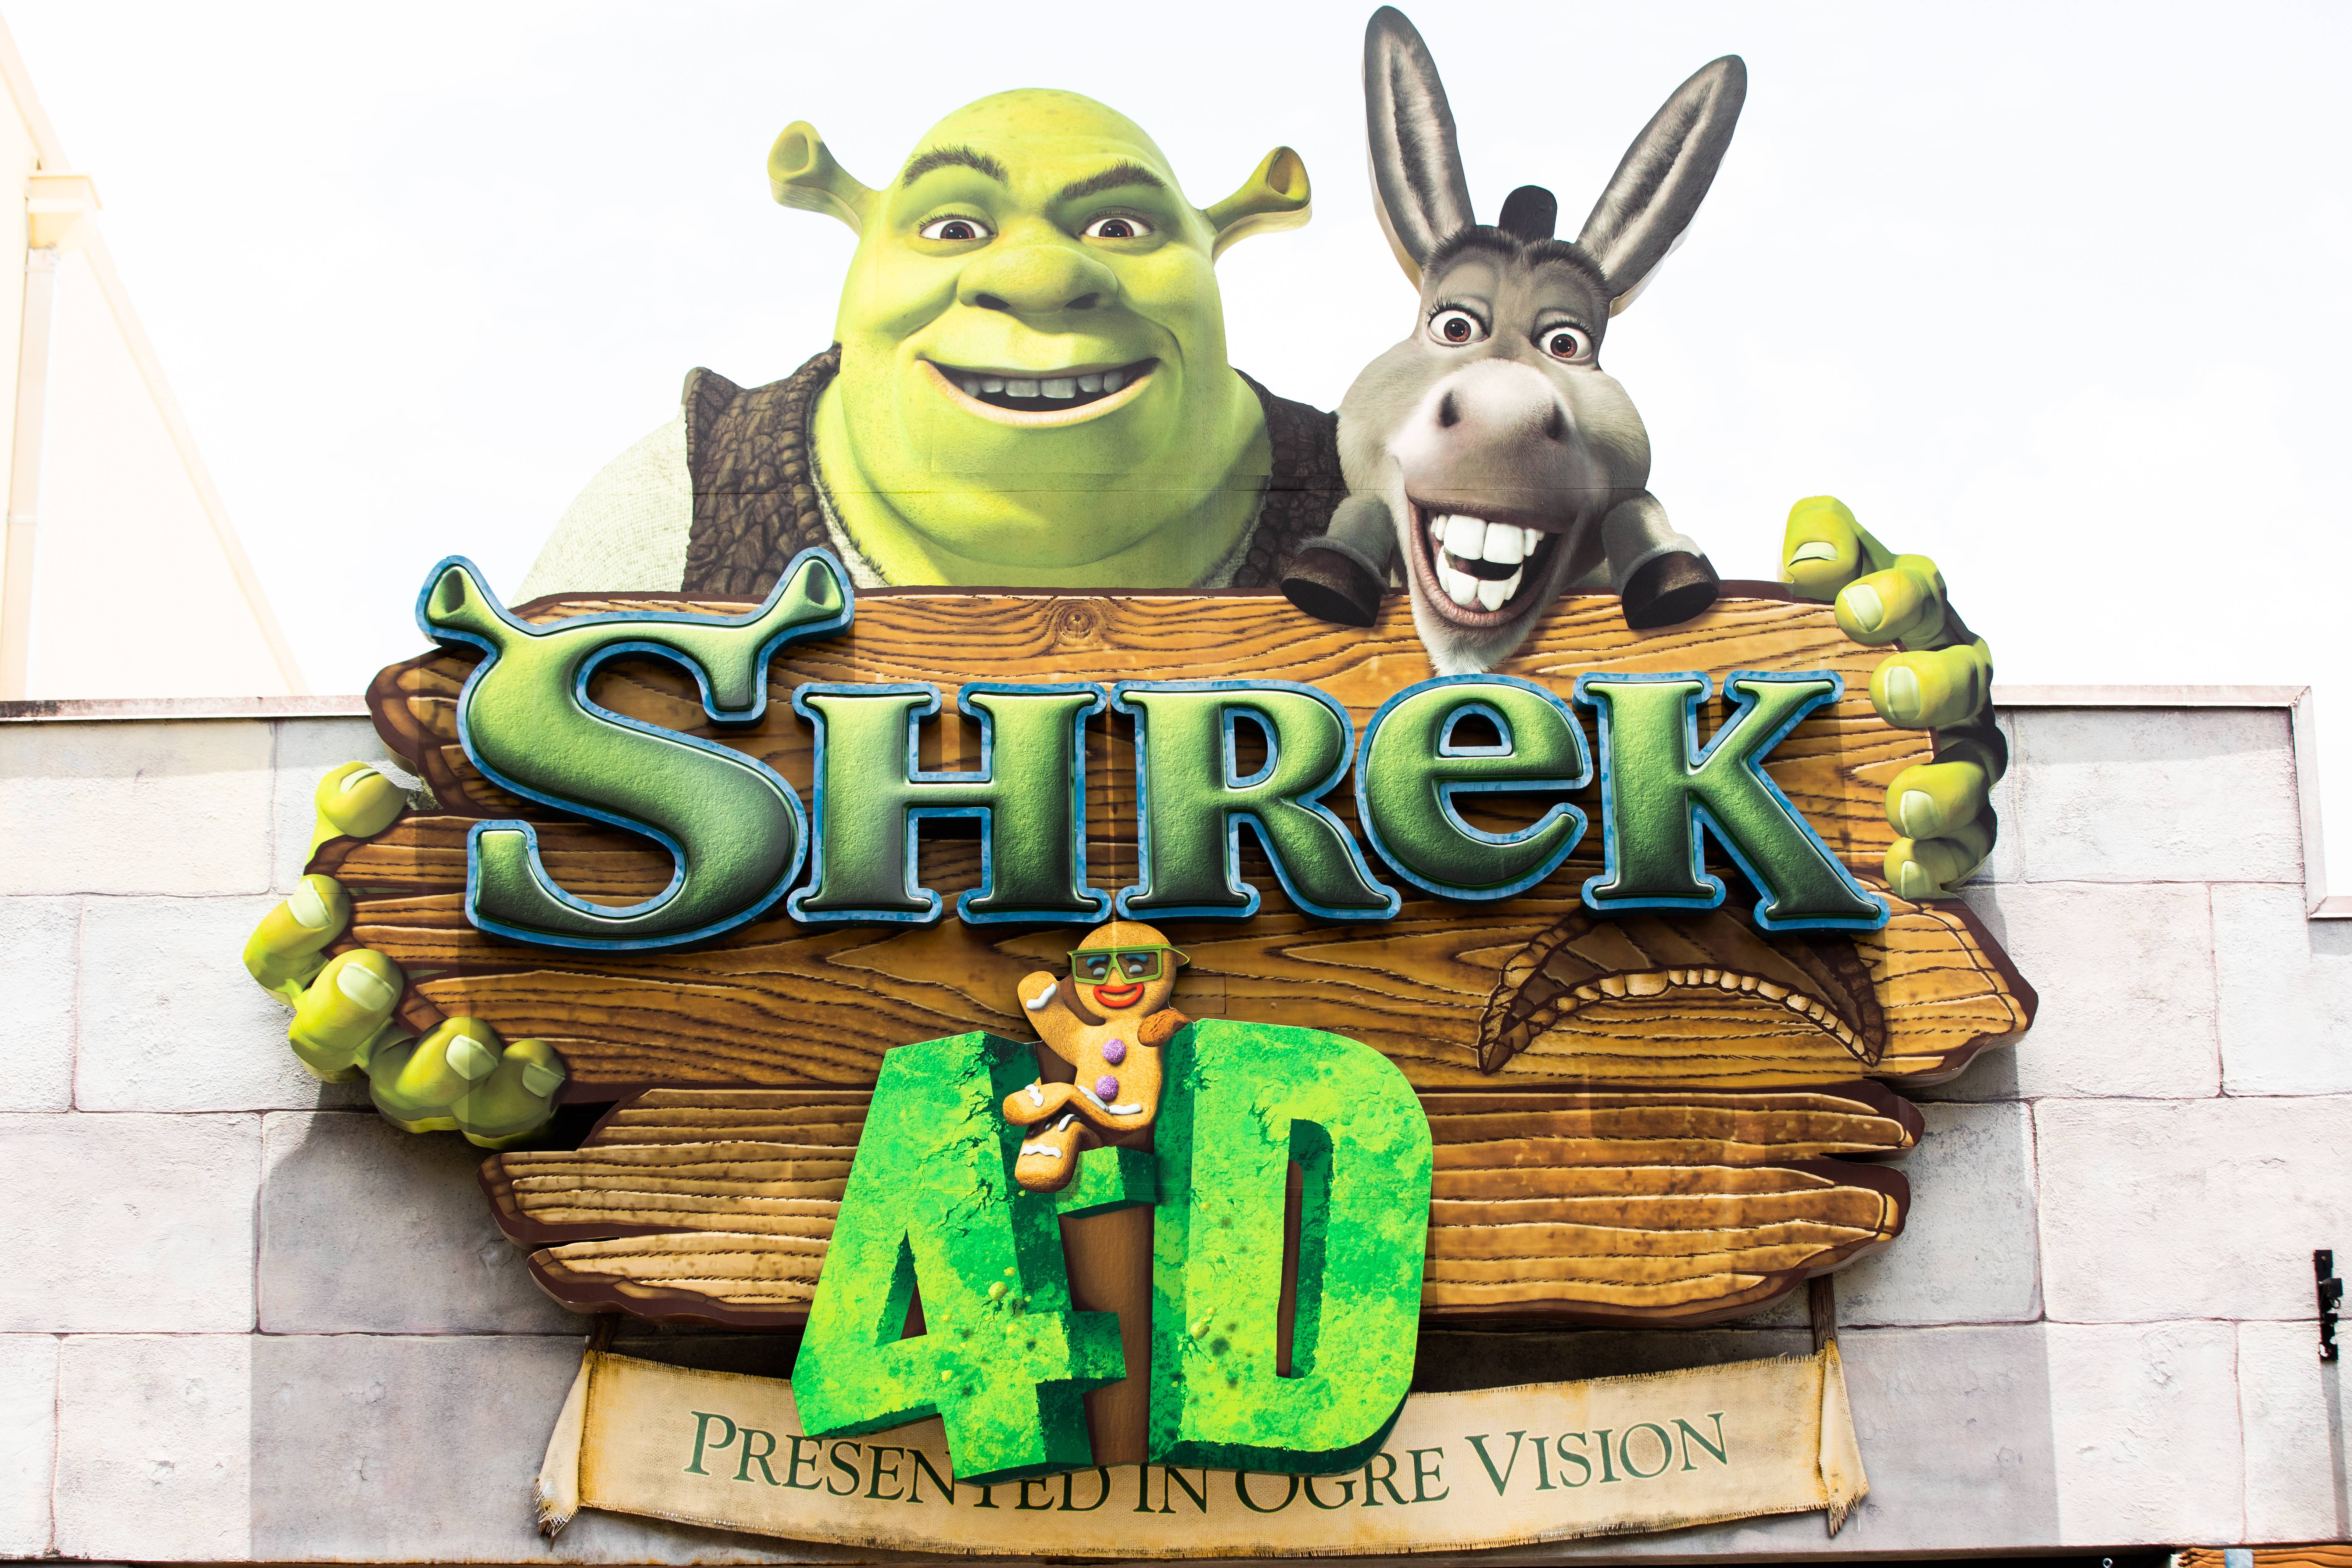 Shrek 4-D entrance signage